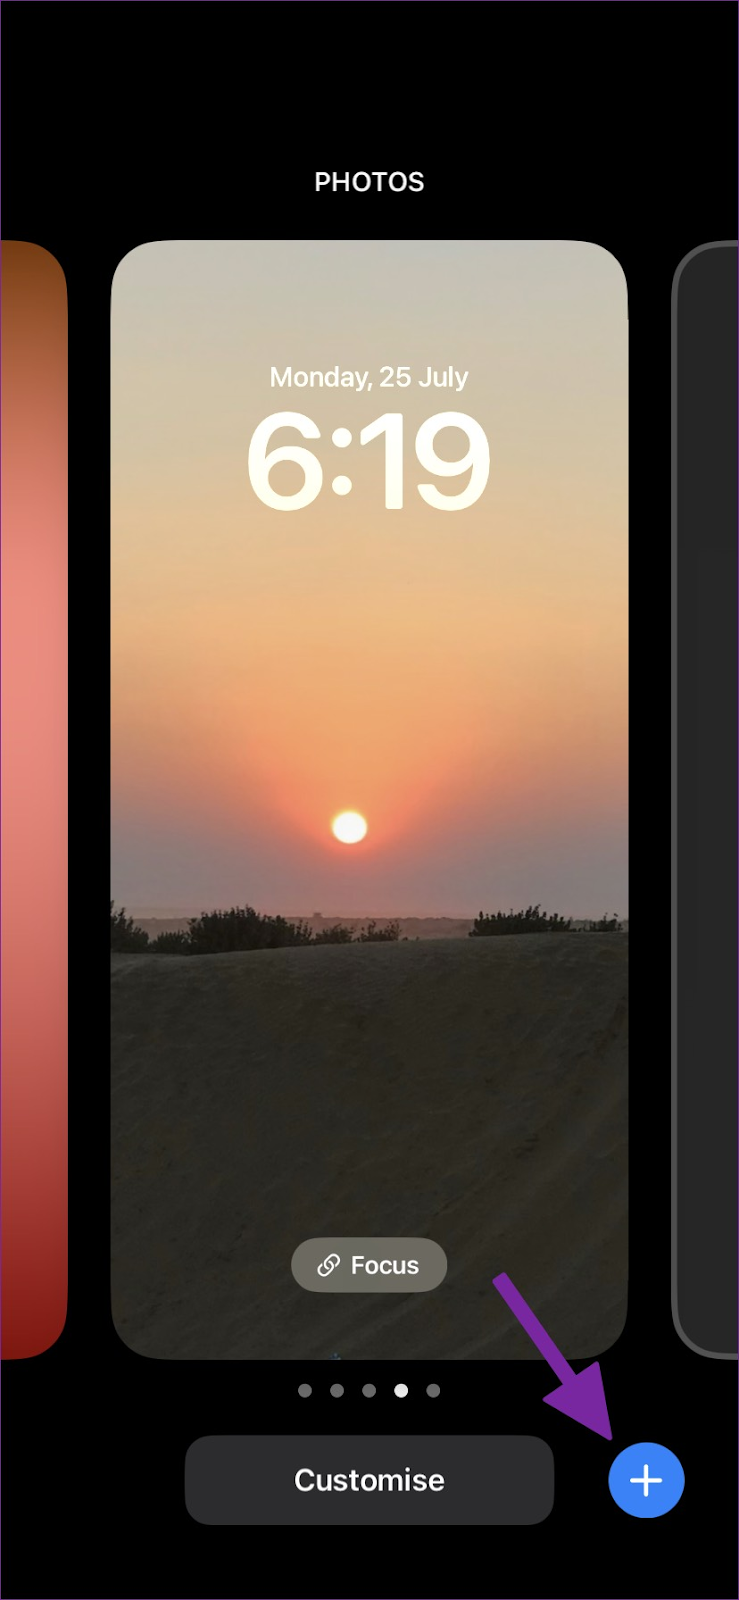 Thay đổi màn hình khóa iPhone trên iOS 16: Tùy biến màn hình khóa iPhone trên iOS 16 sẽ giúp bạn tạo ra một thiết bị độc đáo và sáng tạo hơn bao giờ hết. Bạn có thể thay đổi các thông tin hiển thị trên màn hình khóa, thay đổi hình nền hay tùy chọn các widget hiển thị theo phong cách của riêng bạn. Hãy khám phá và trang trí màn hình khóa của mình ngay hôm nay.